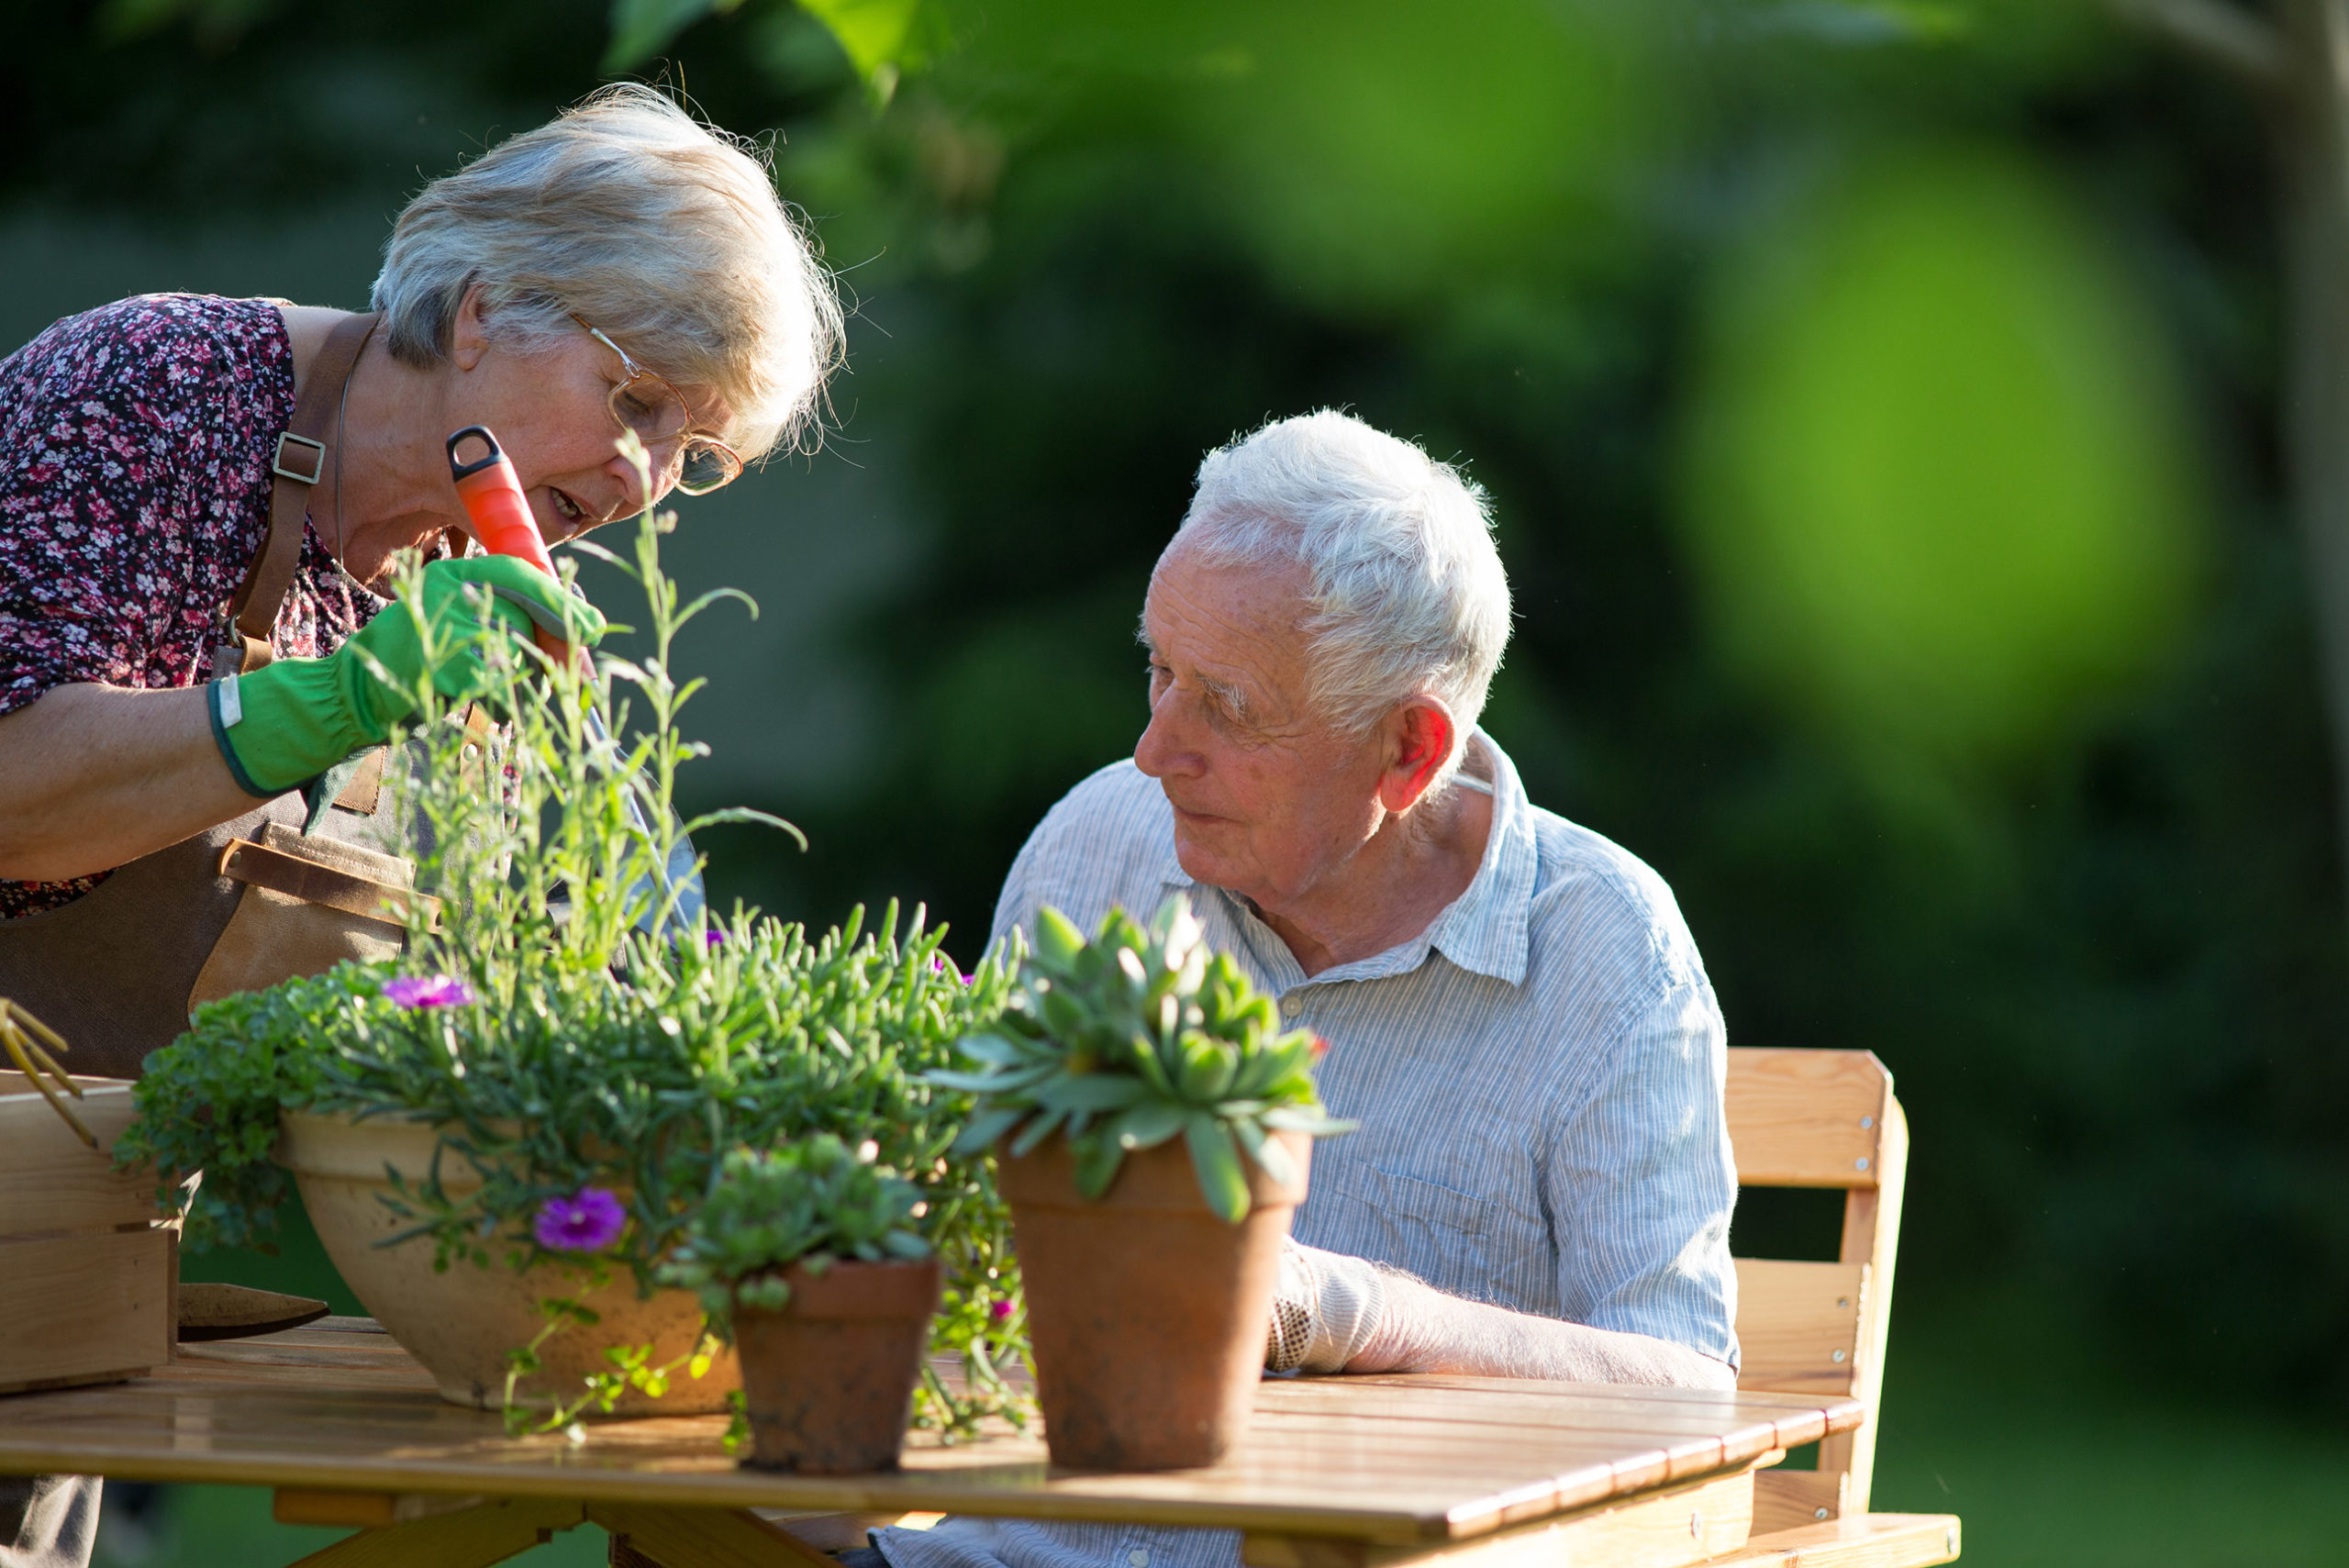 Senior couple potting plants outside.